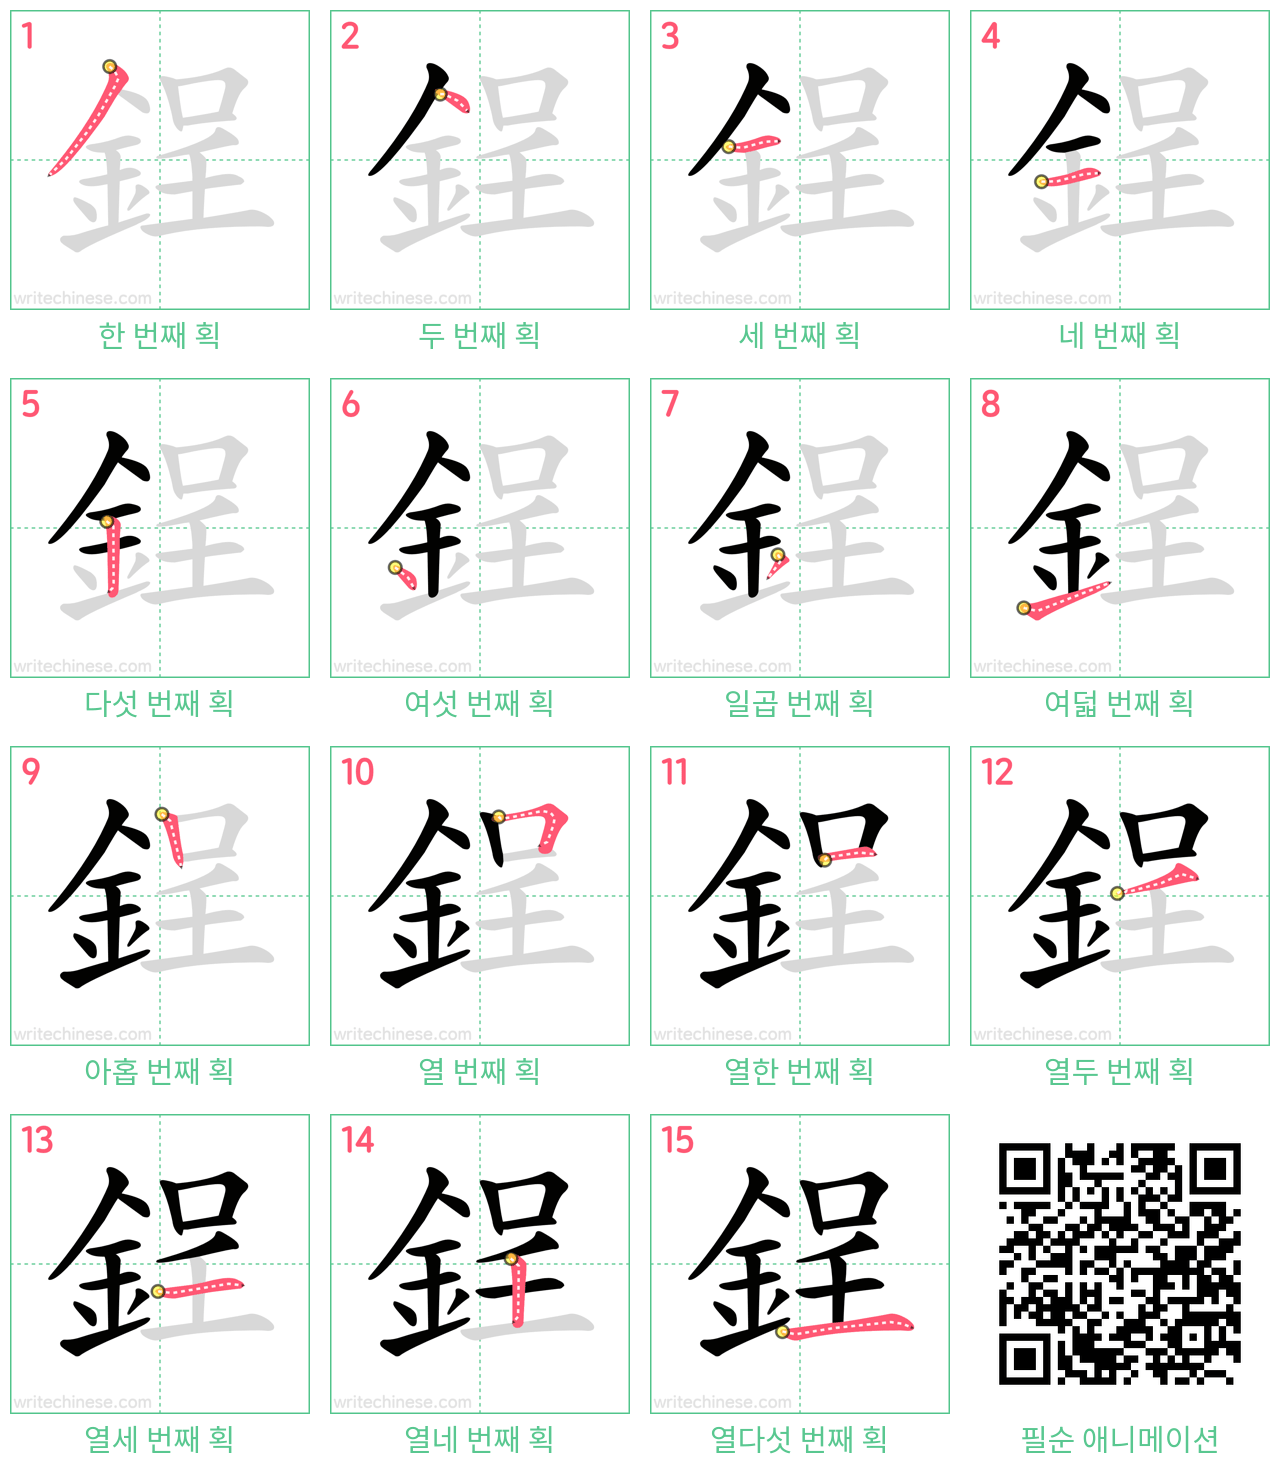 鋥 step-by-step stroke order diagrams